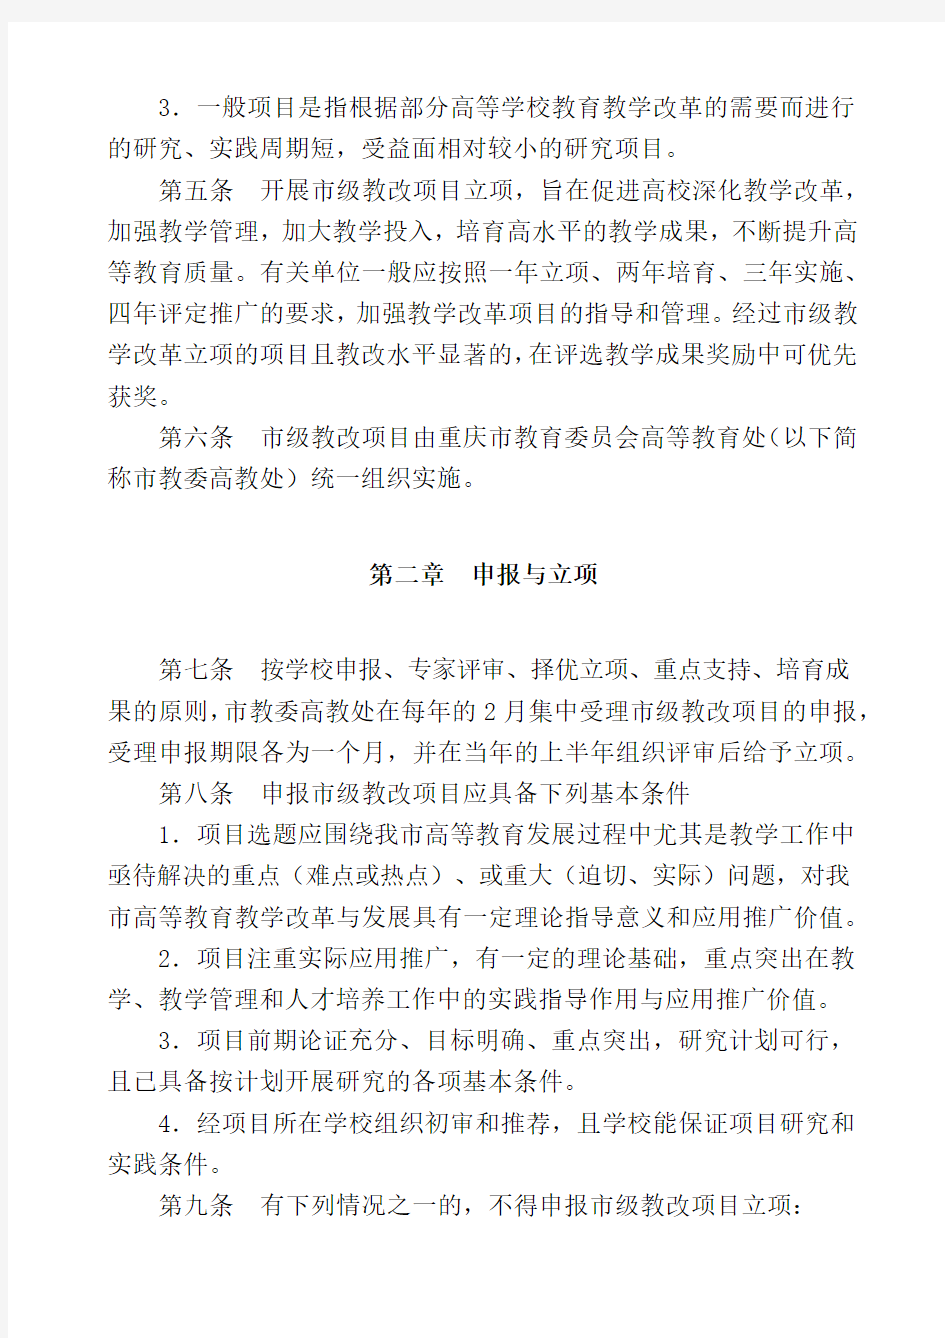 2重庆市高等教育教学改革研究项目管理办法